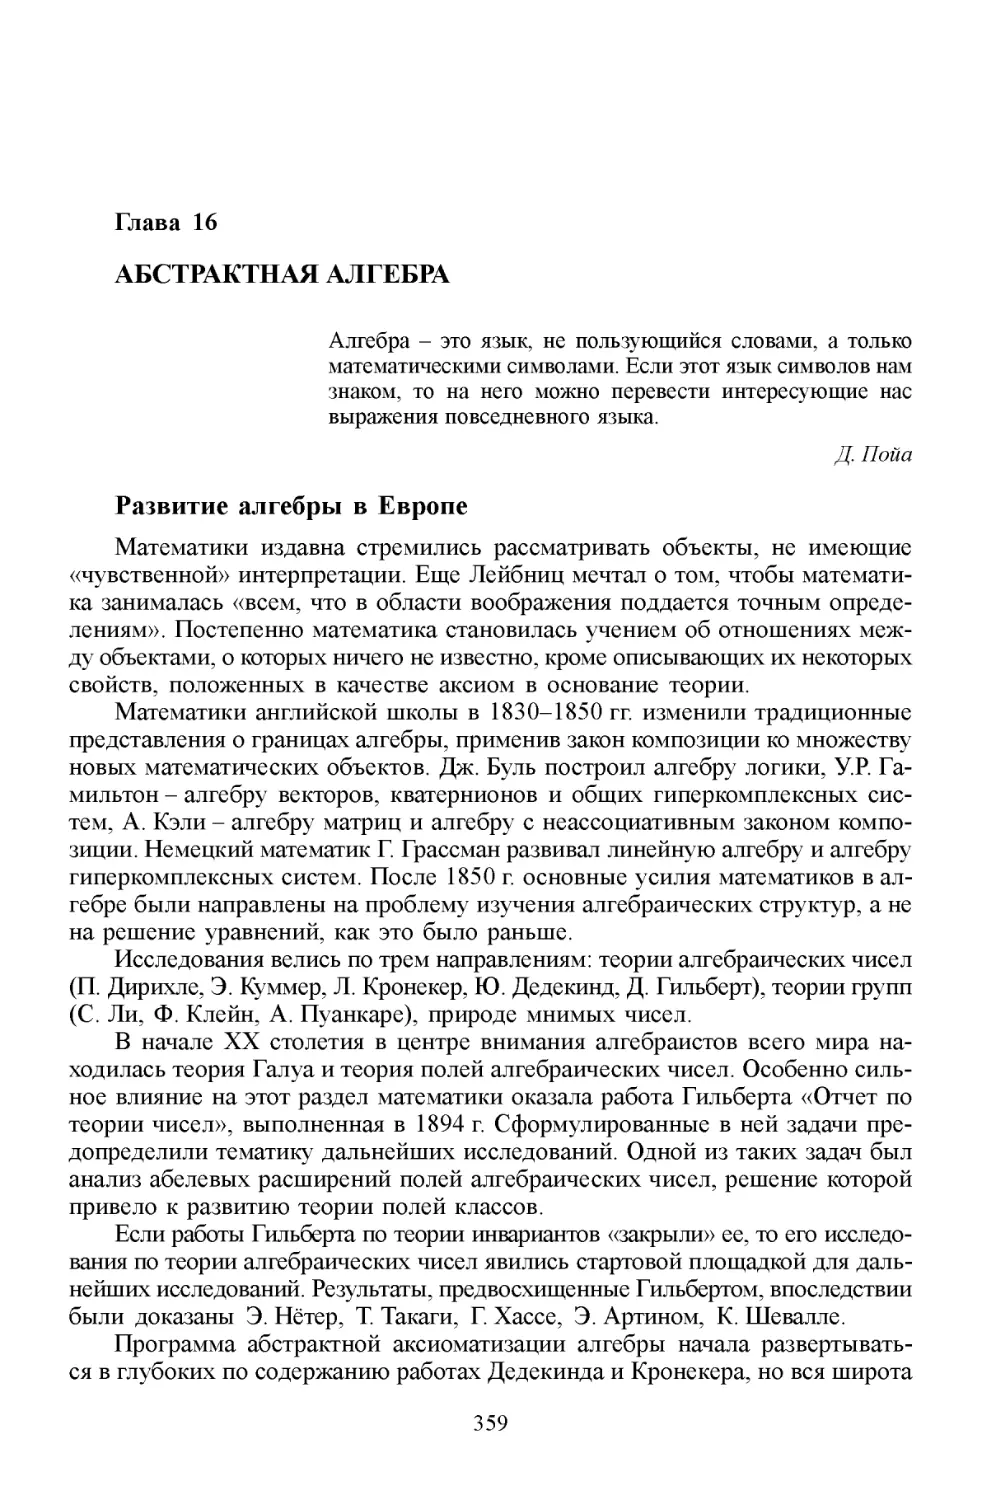 Глава 16. Абстрактная алгебра
Развитие алгебры в Европе